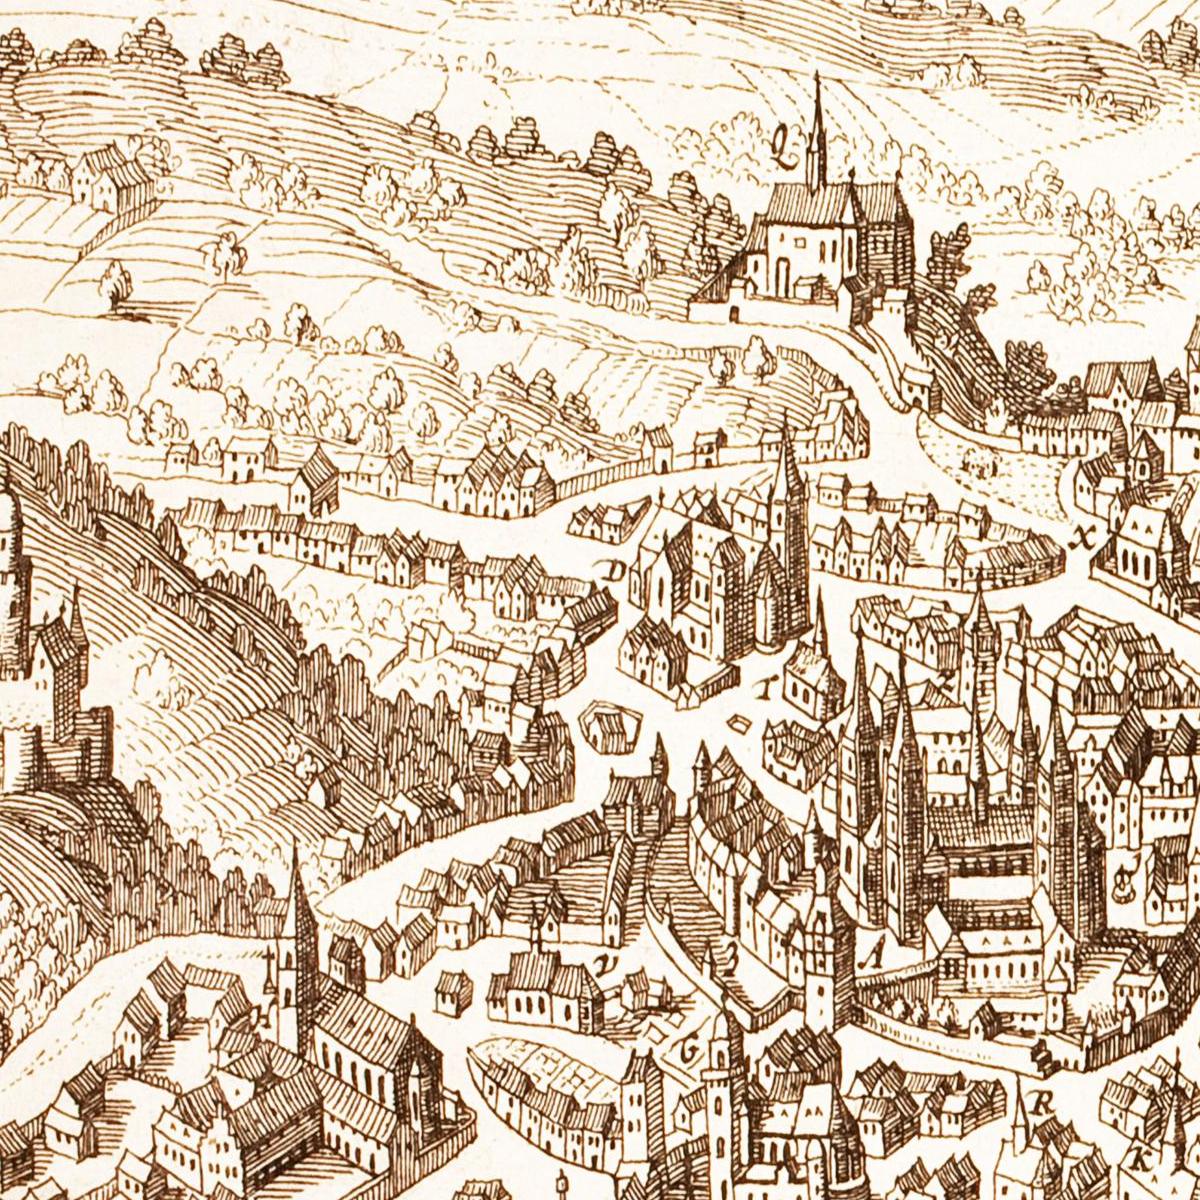 Historische Stadtansicht Bamberg um 1642